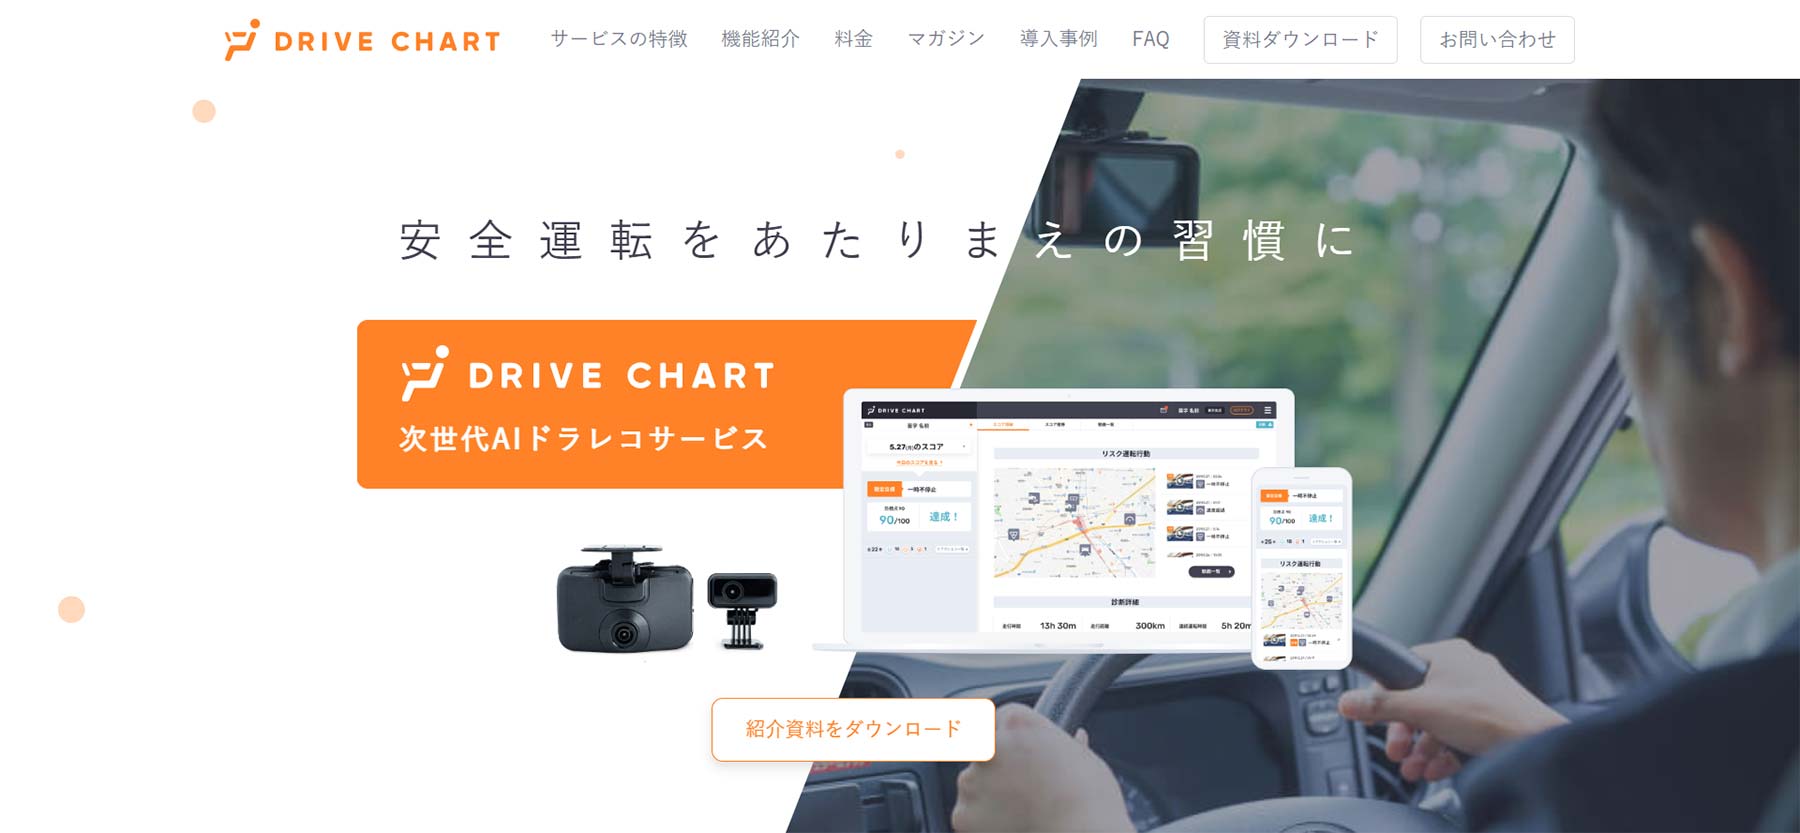 DRIVE CHART公式Webサイト